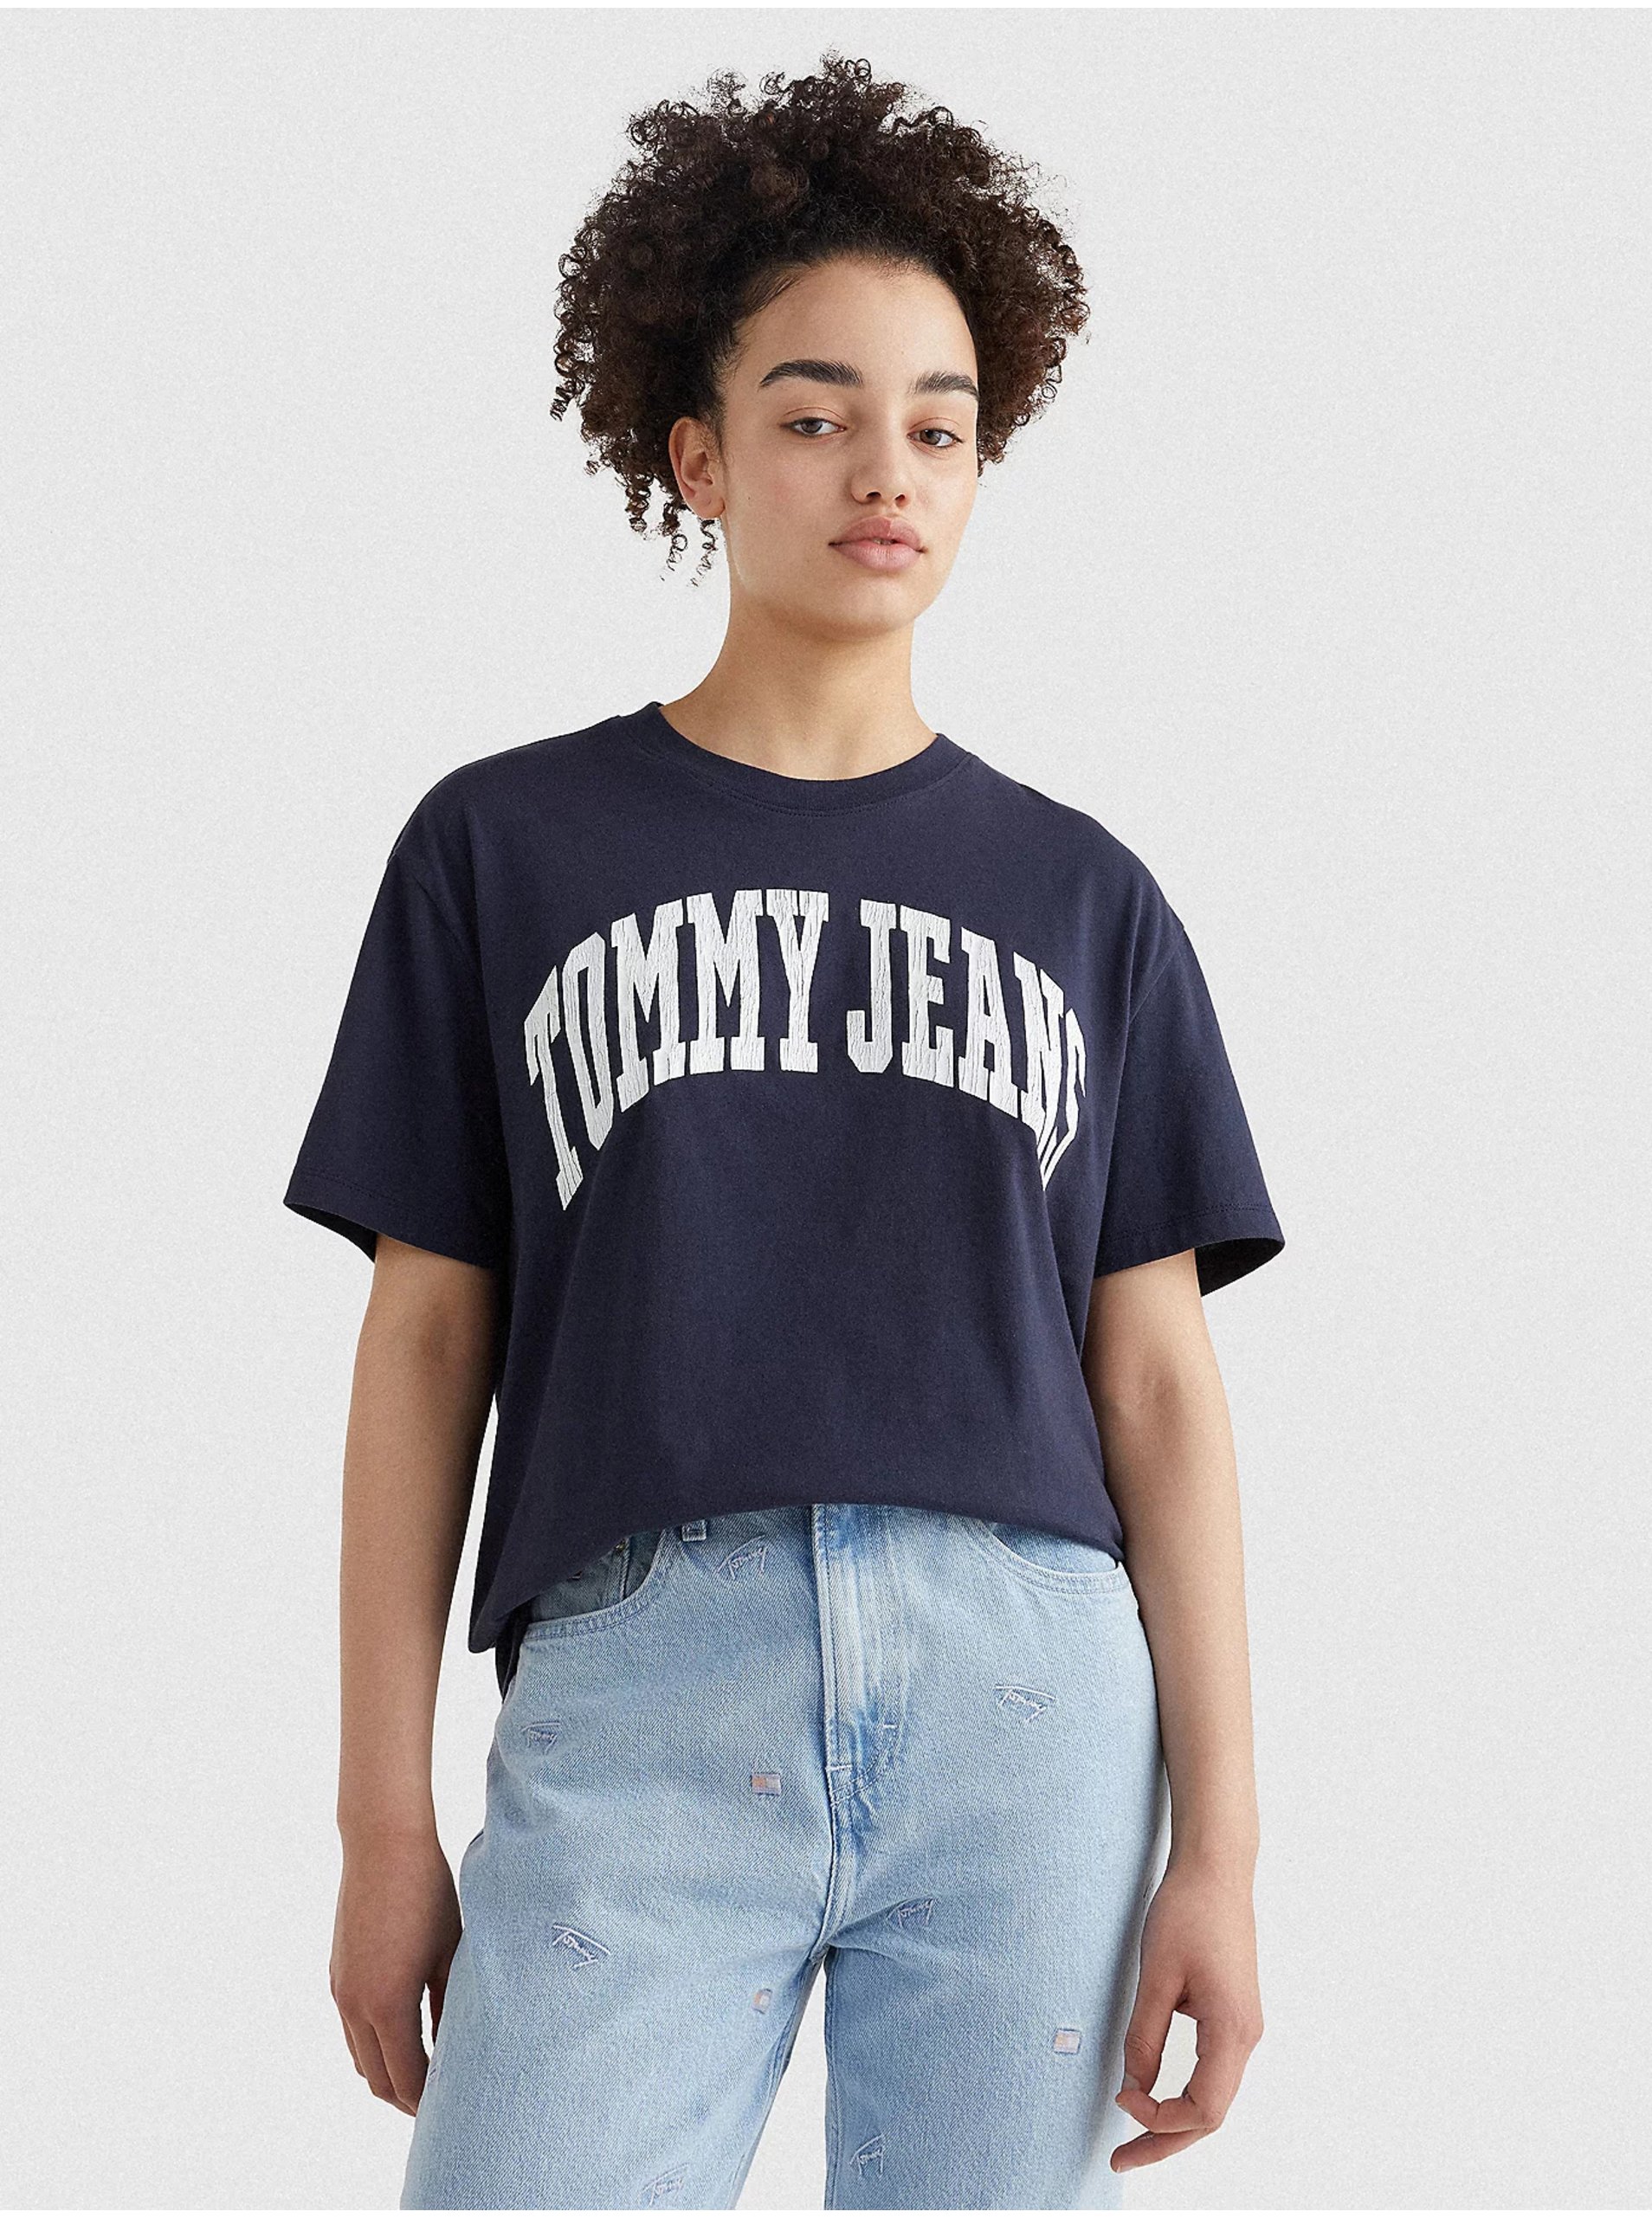 Lacno Tmavomodré dámske vzorované dlhé tričko Tommy Jeans